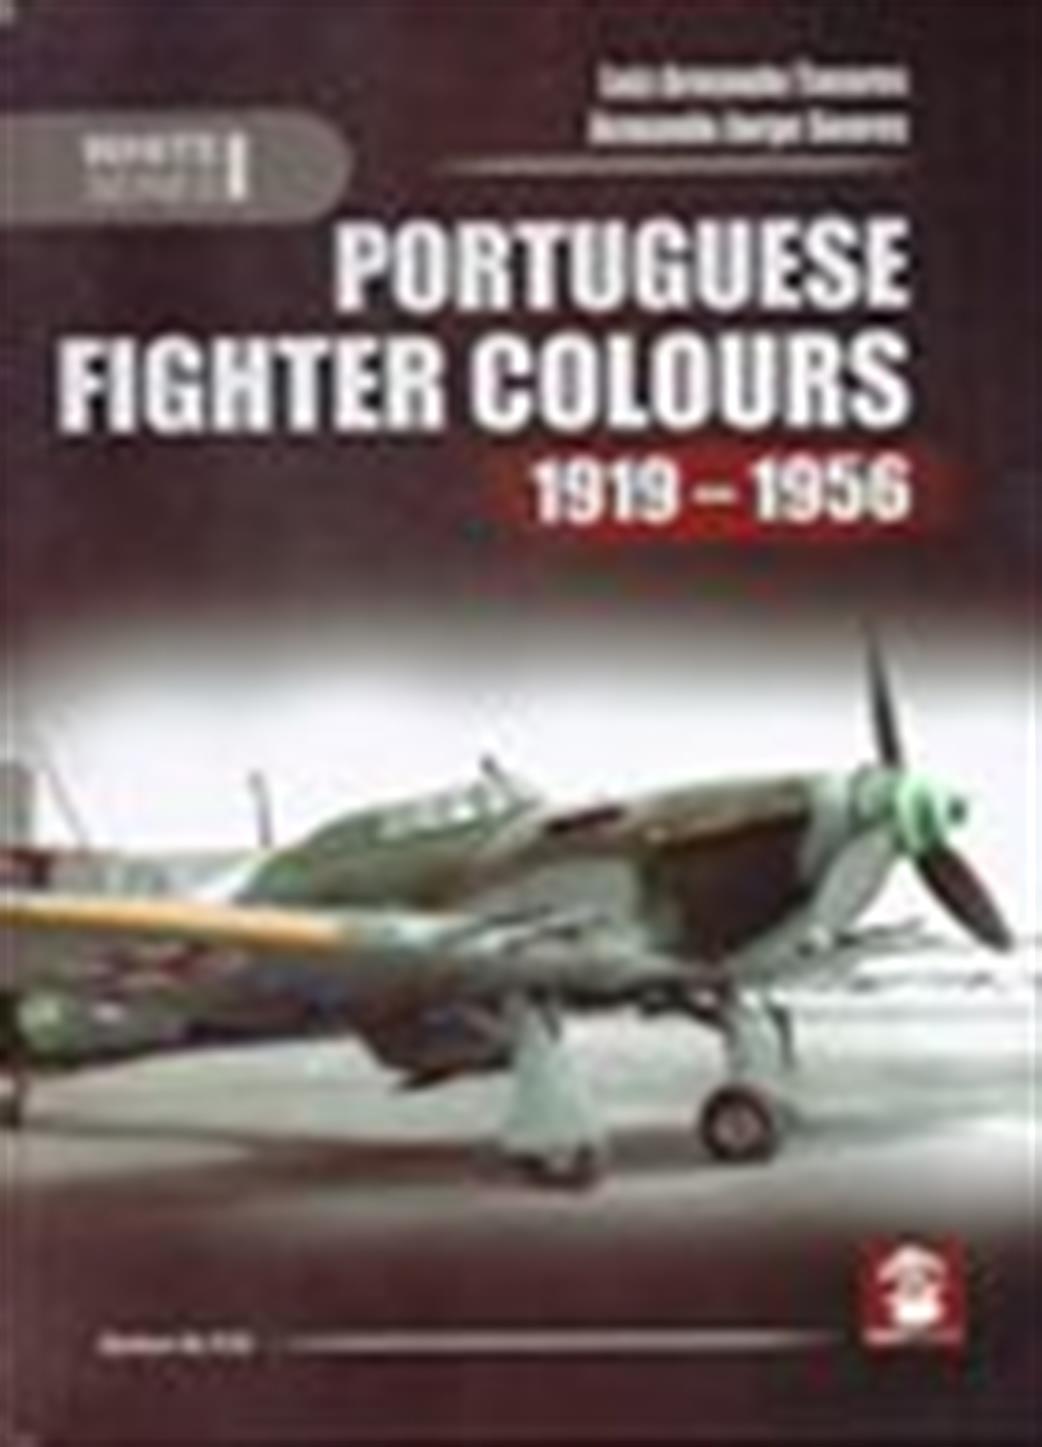 9788363678456 Portuguese Fighter Colours 1919 - 1956